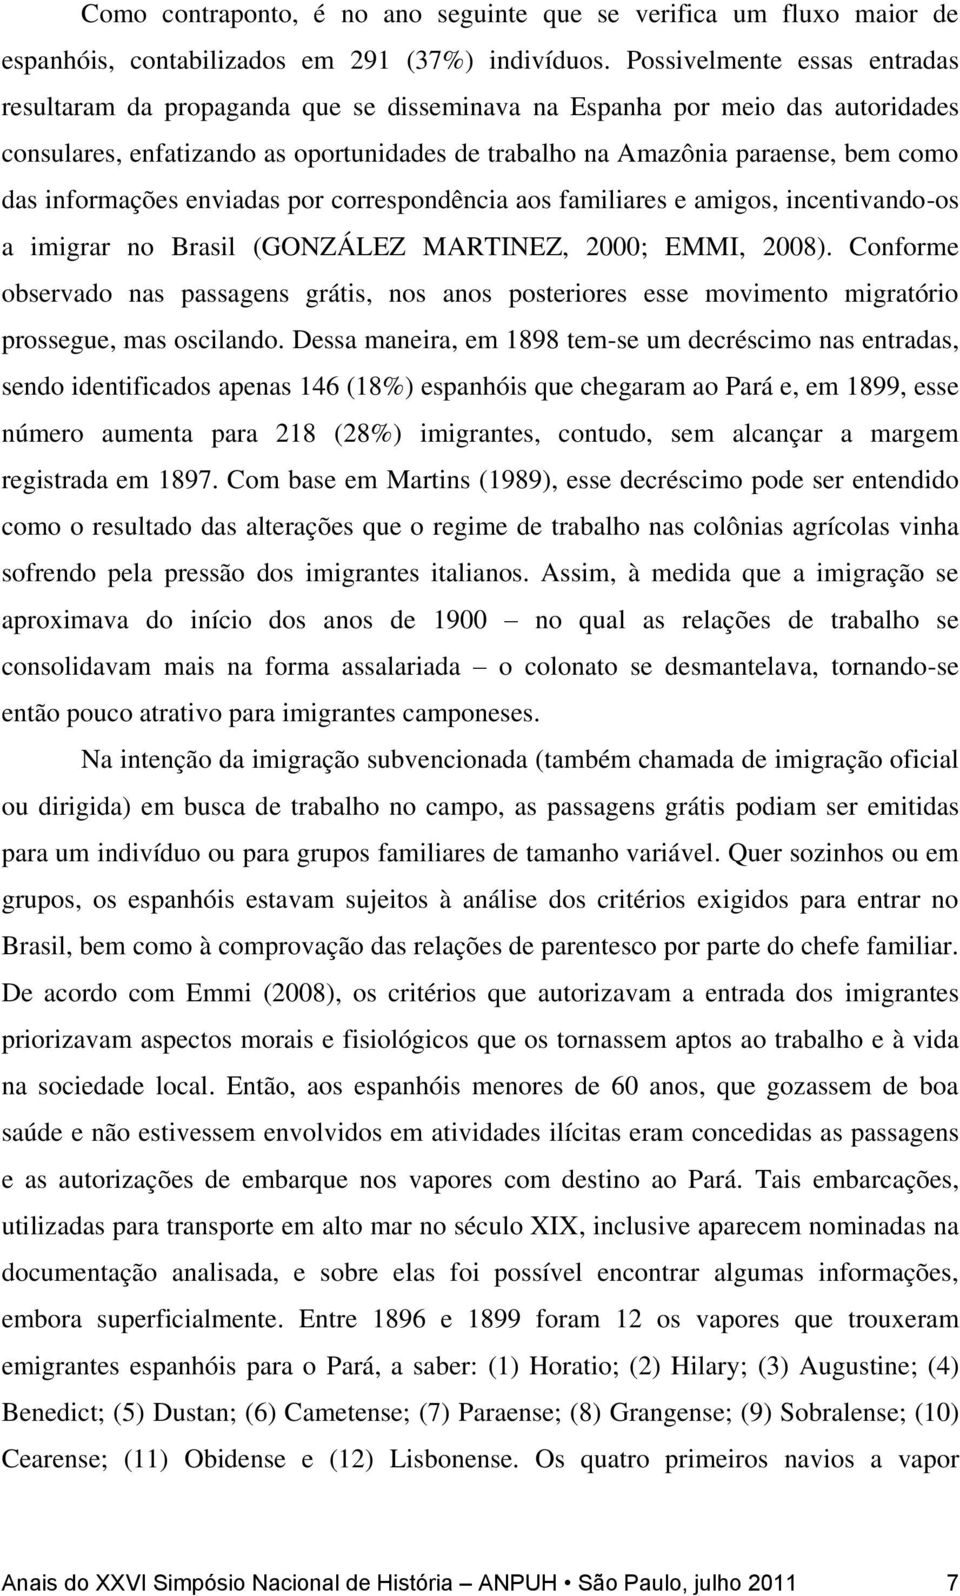 informações enviadas por correspondência aos familiares e amigos, incentivando-os a imigrar no Brasil (GONZÁLEZ MARTINEZ, 2000; EMMI, 2008).